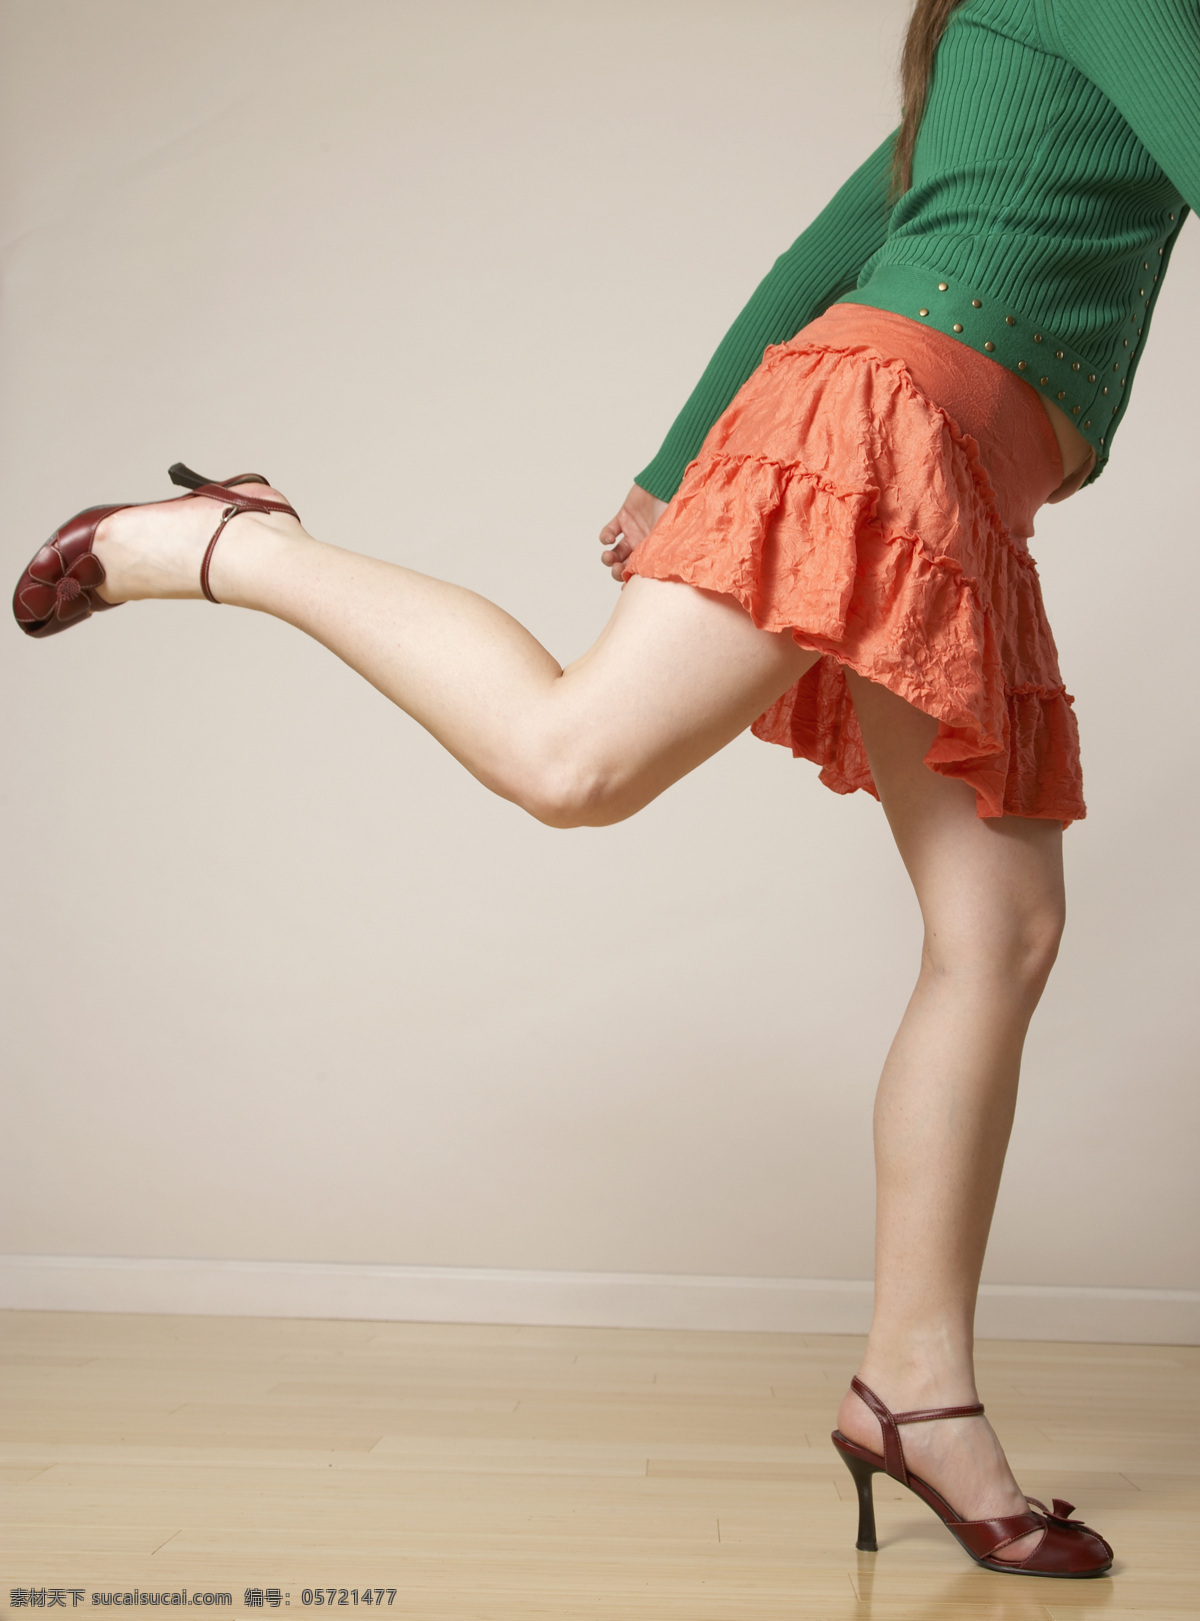 时髦 女人 美腿 高跟鞋 流行 短裙 橙色 脚步 美女图片 人物图片